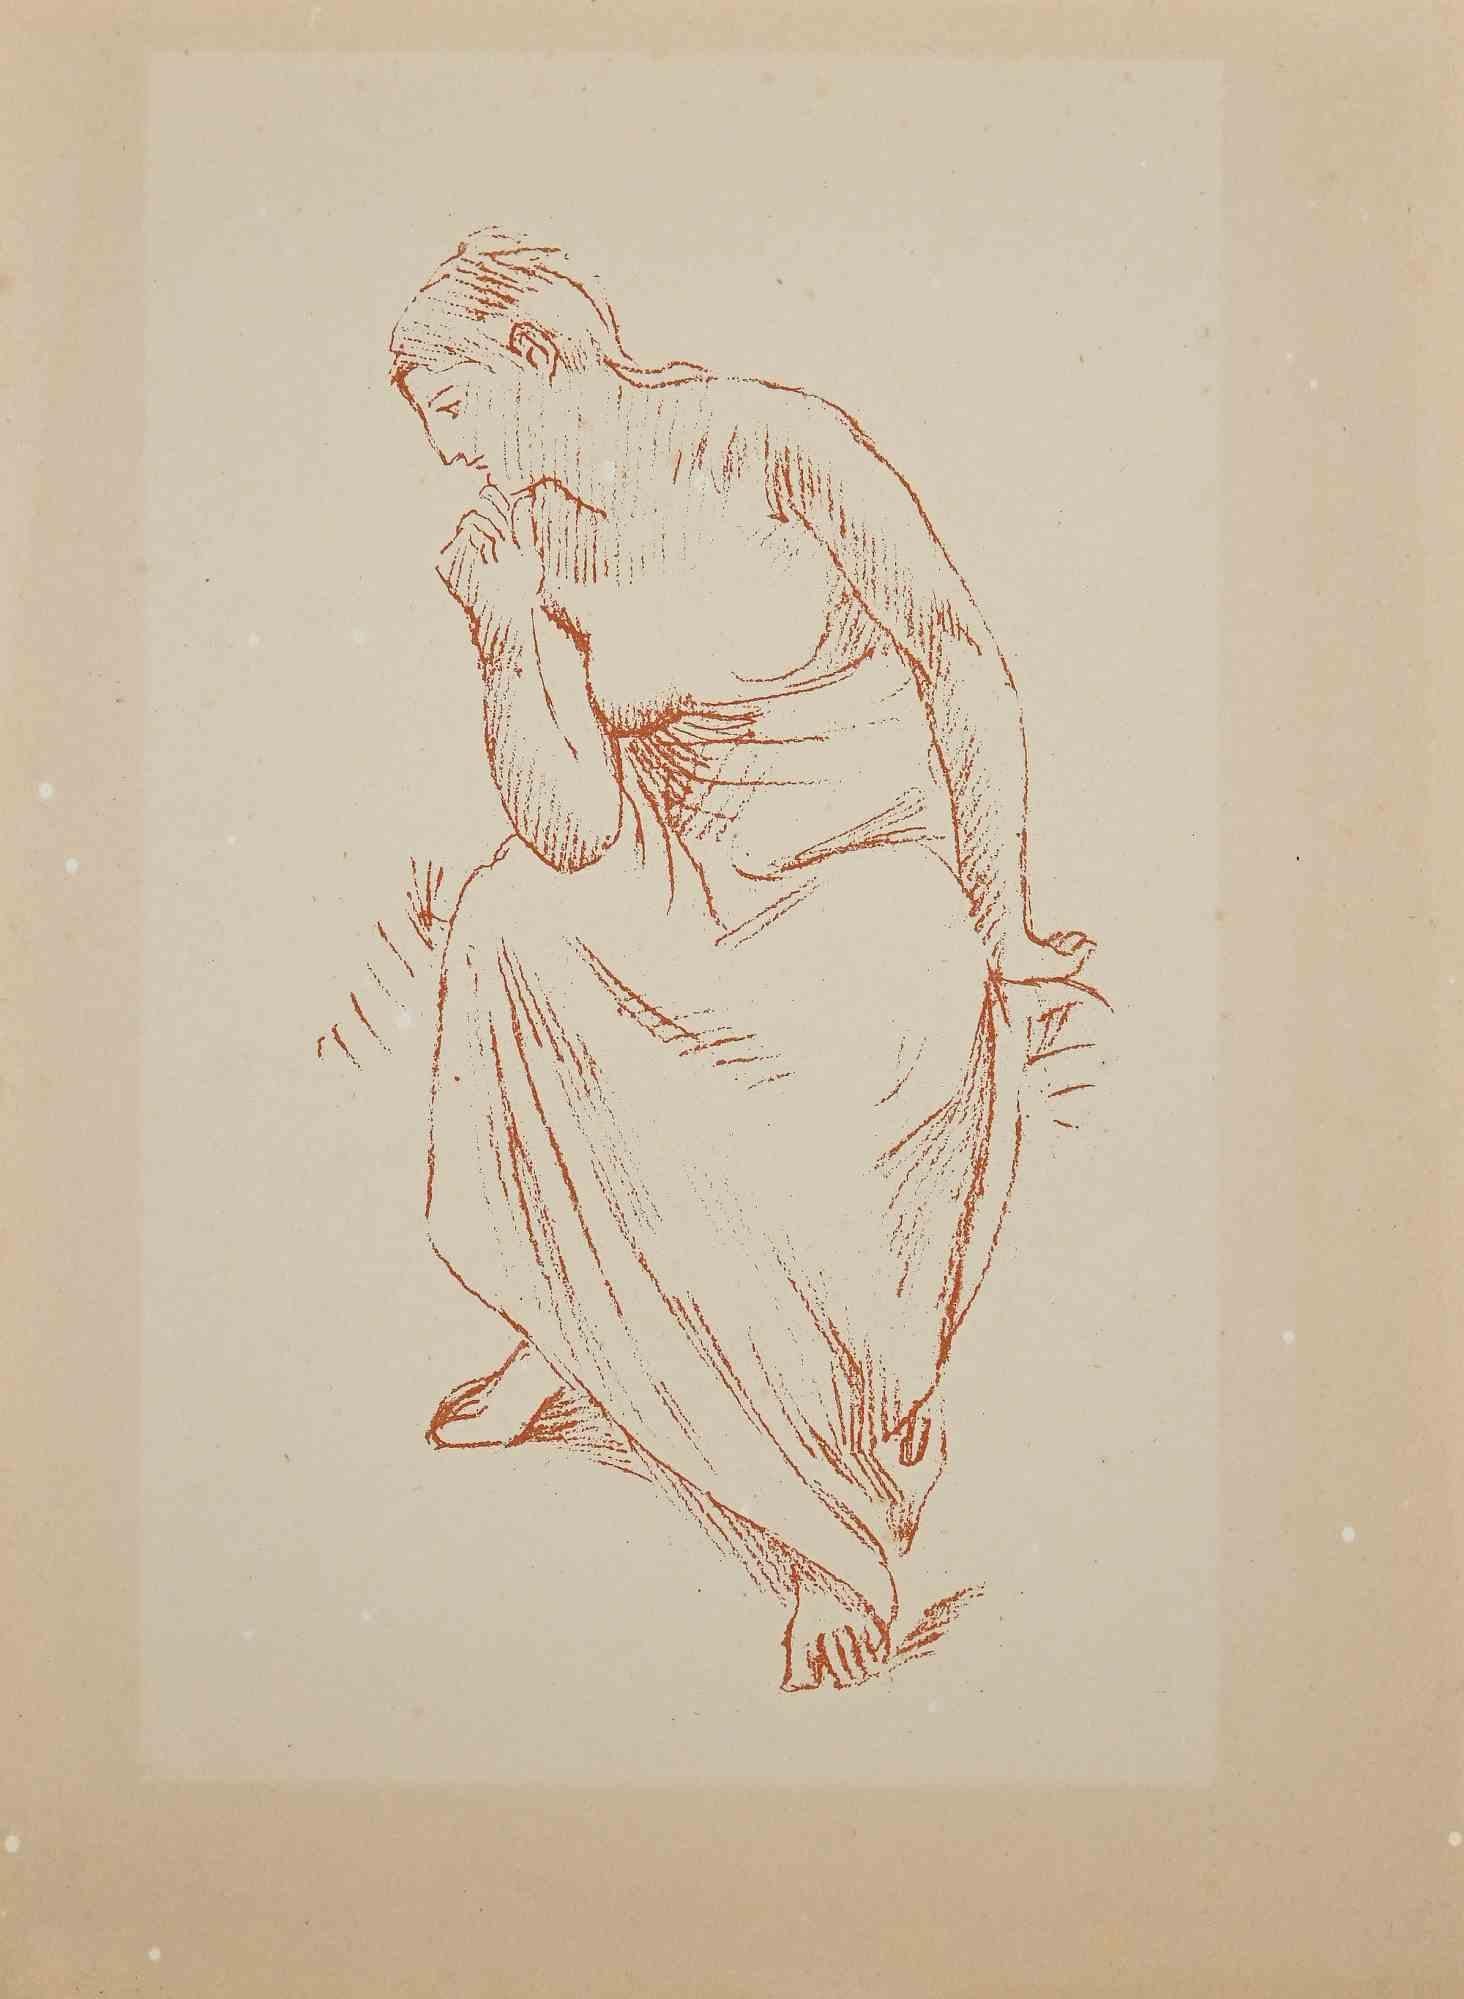 Pierre Puvis de Chavannes Figurative Print - Woman - Original Lithograph by P. Puvis de Chavannes - Late 19th Century